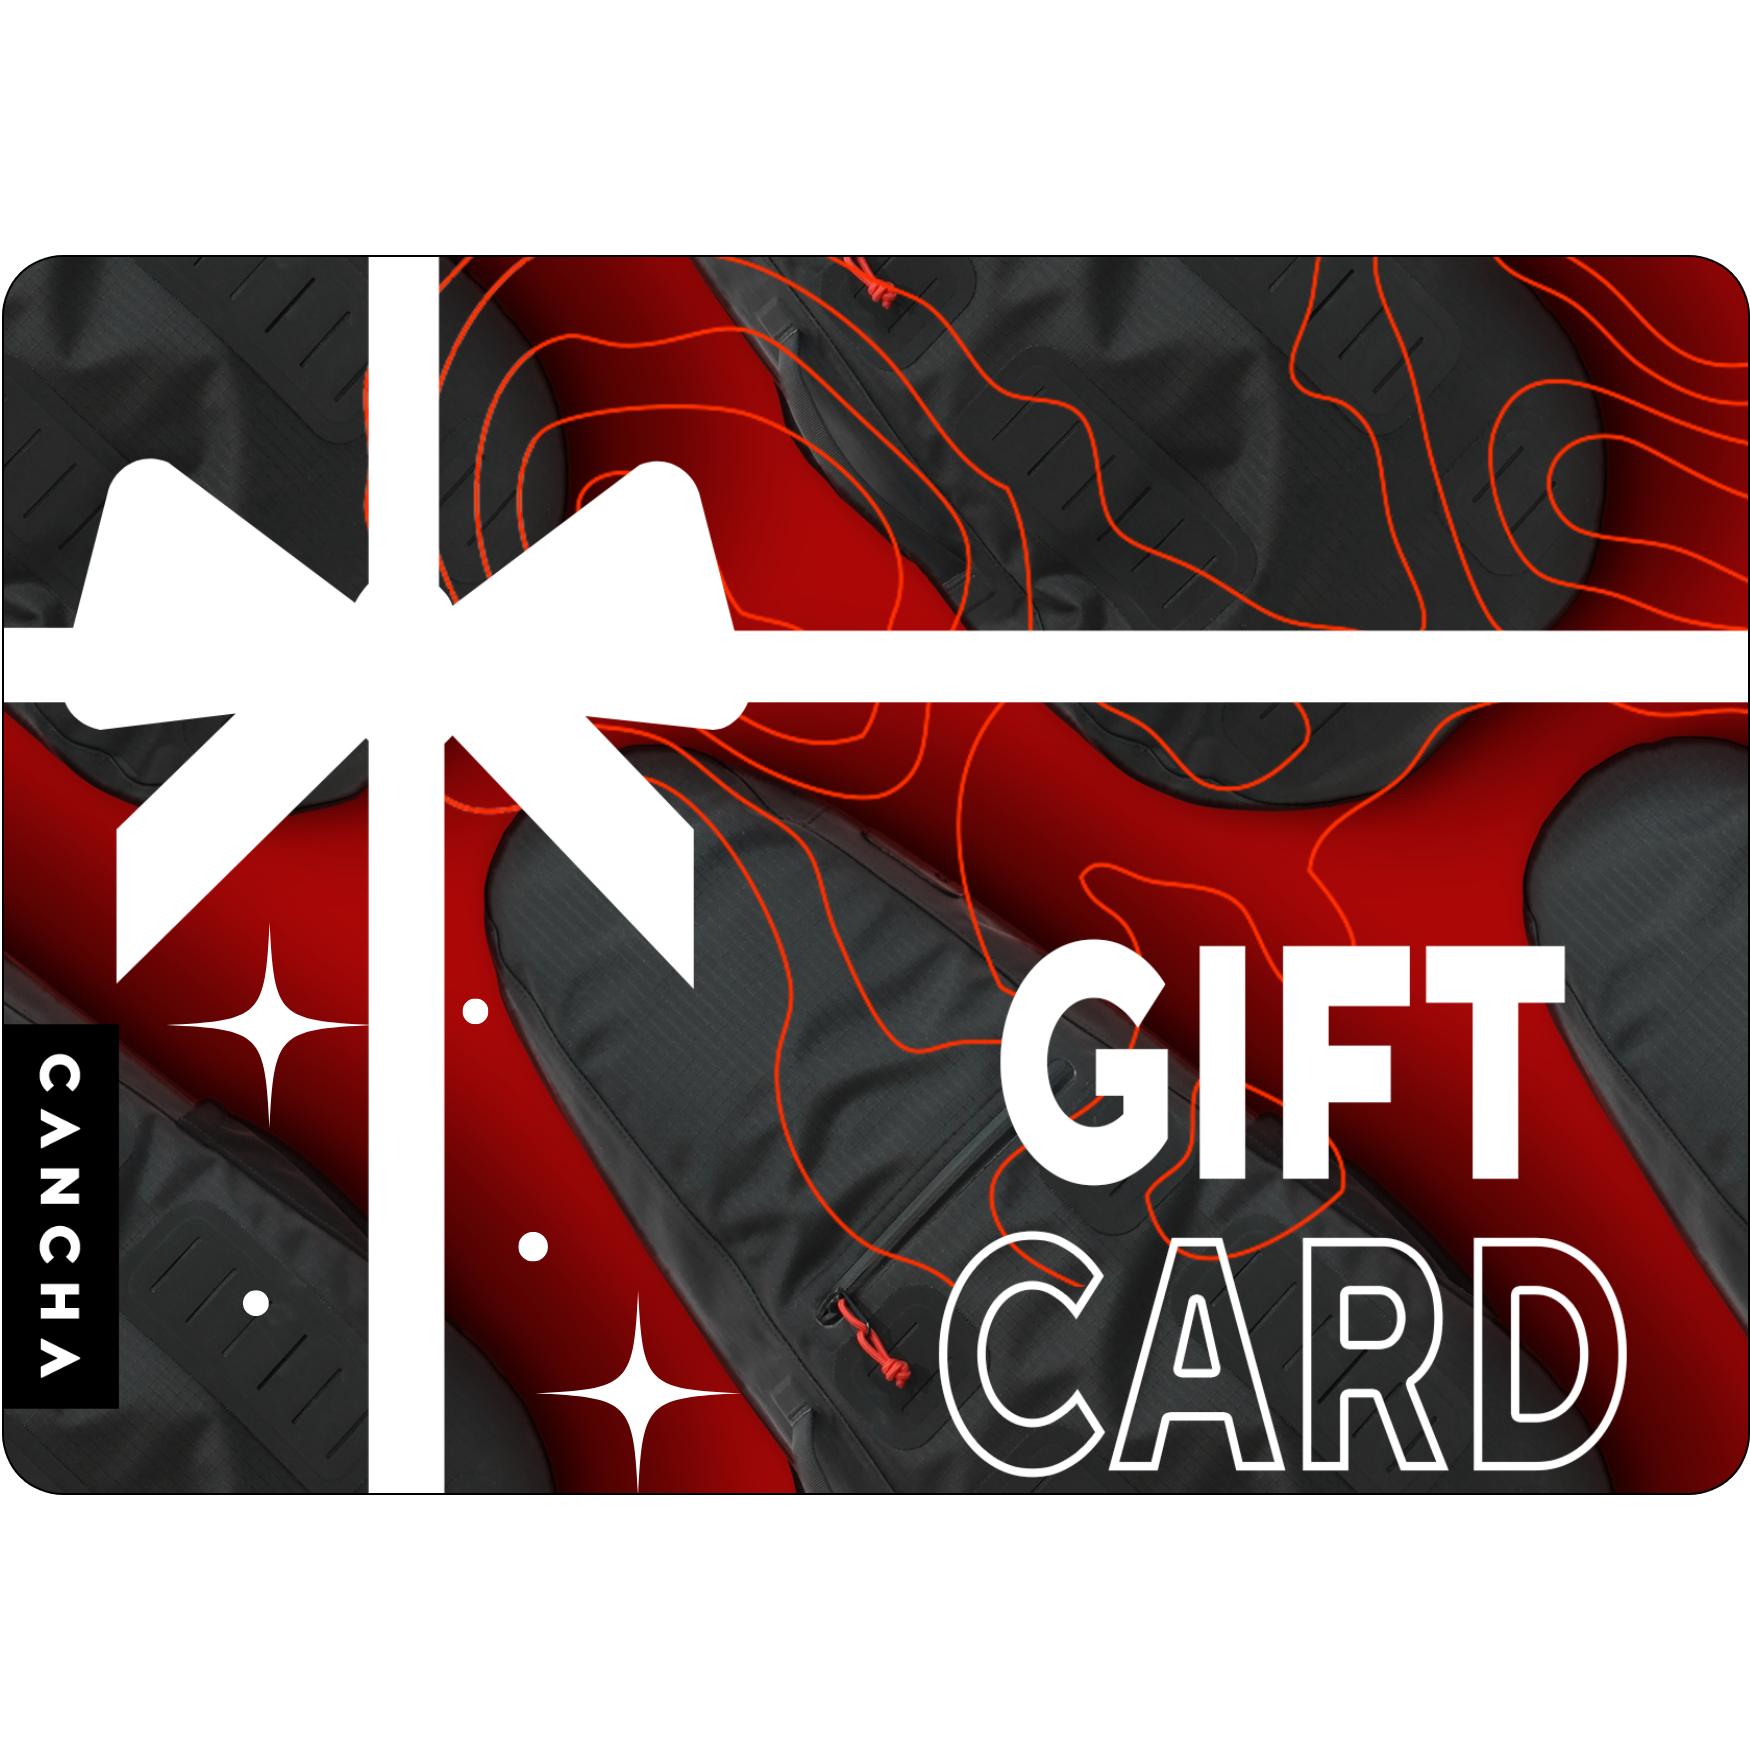 Cancha Gift Card Gift Card